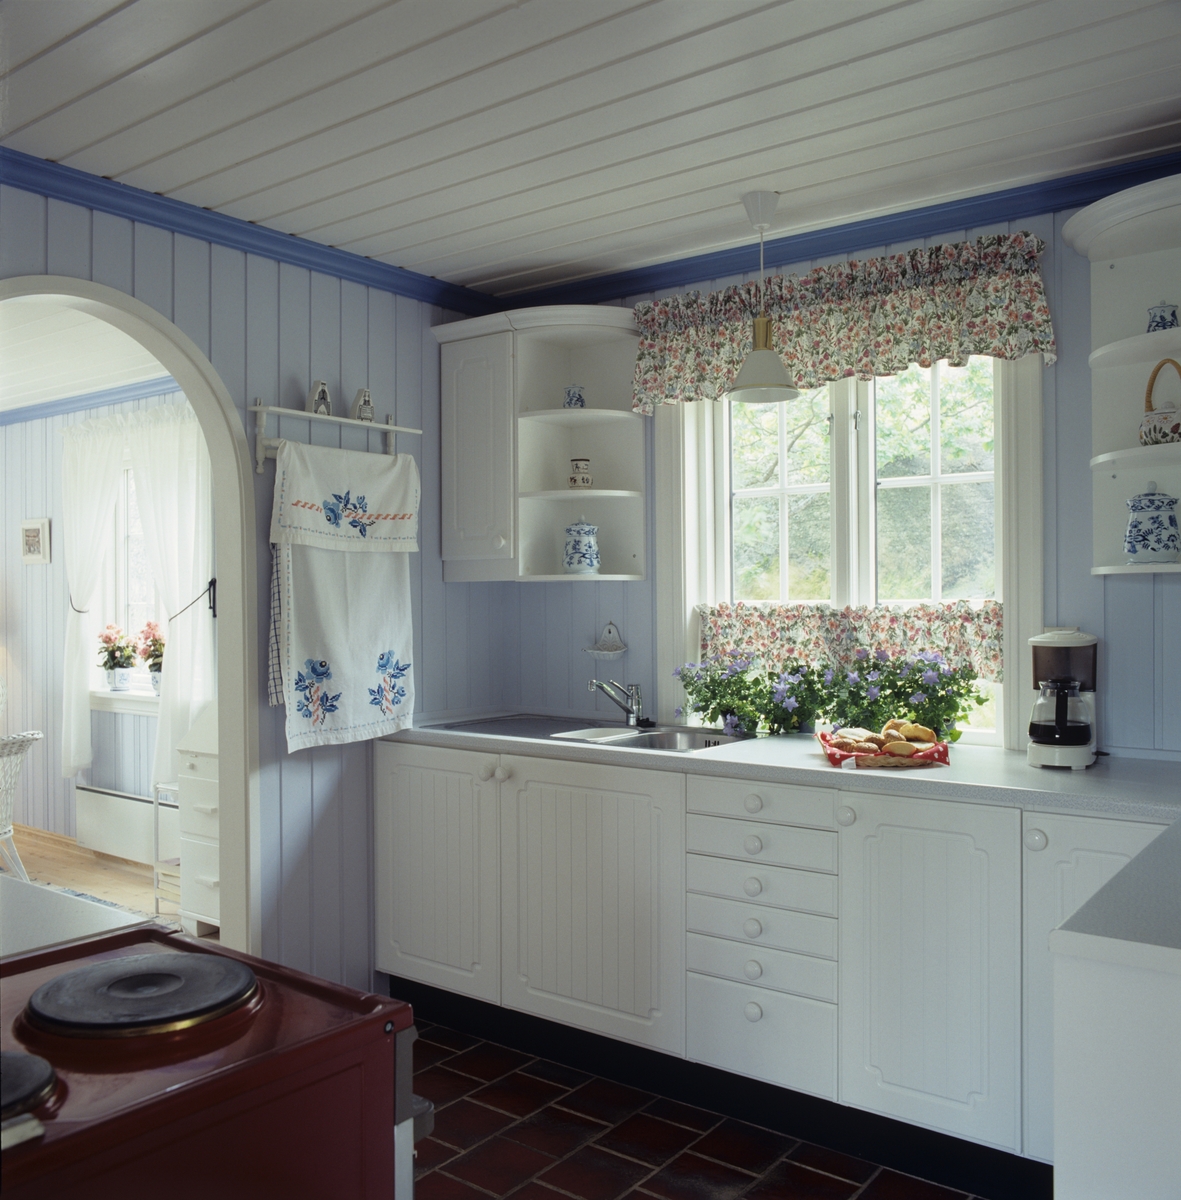 Sommerhus ved Dalen, Røssesund, kjøkkenet med moderne innredning i tradisjonell stil. Illustrasjonsbilde fra Nye Bonytt 1989.